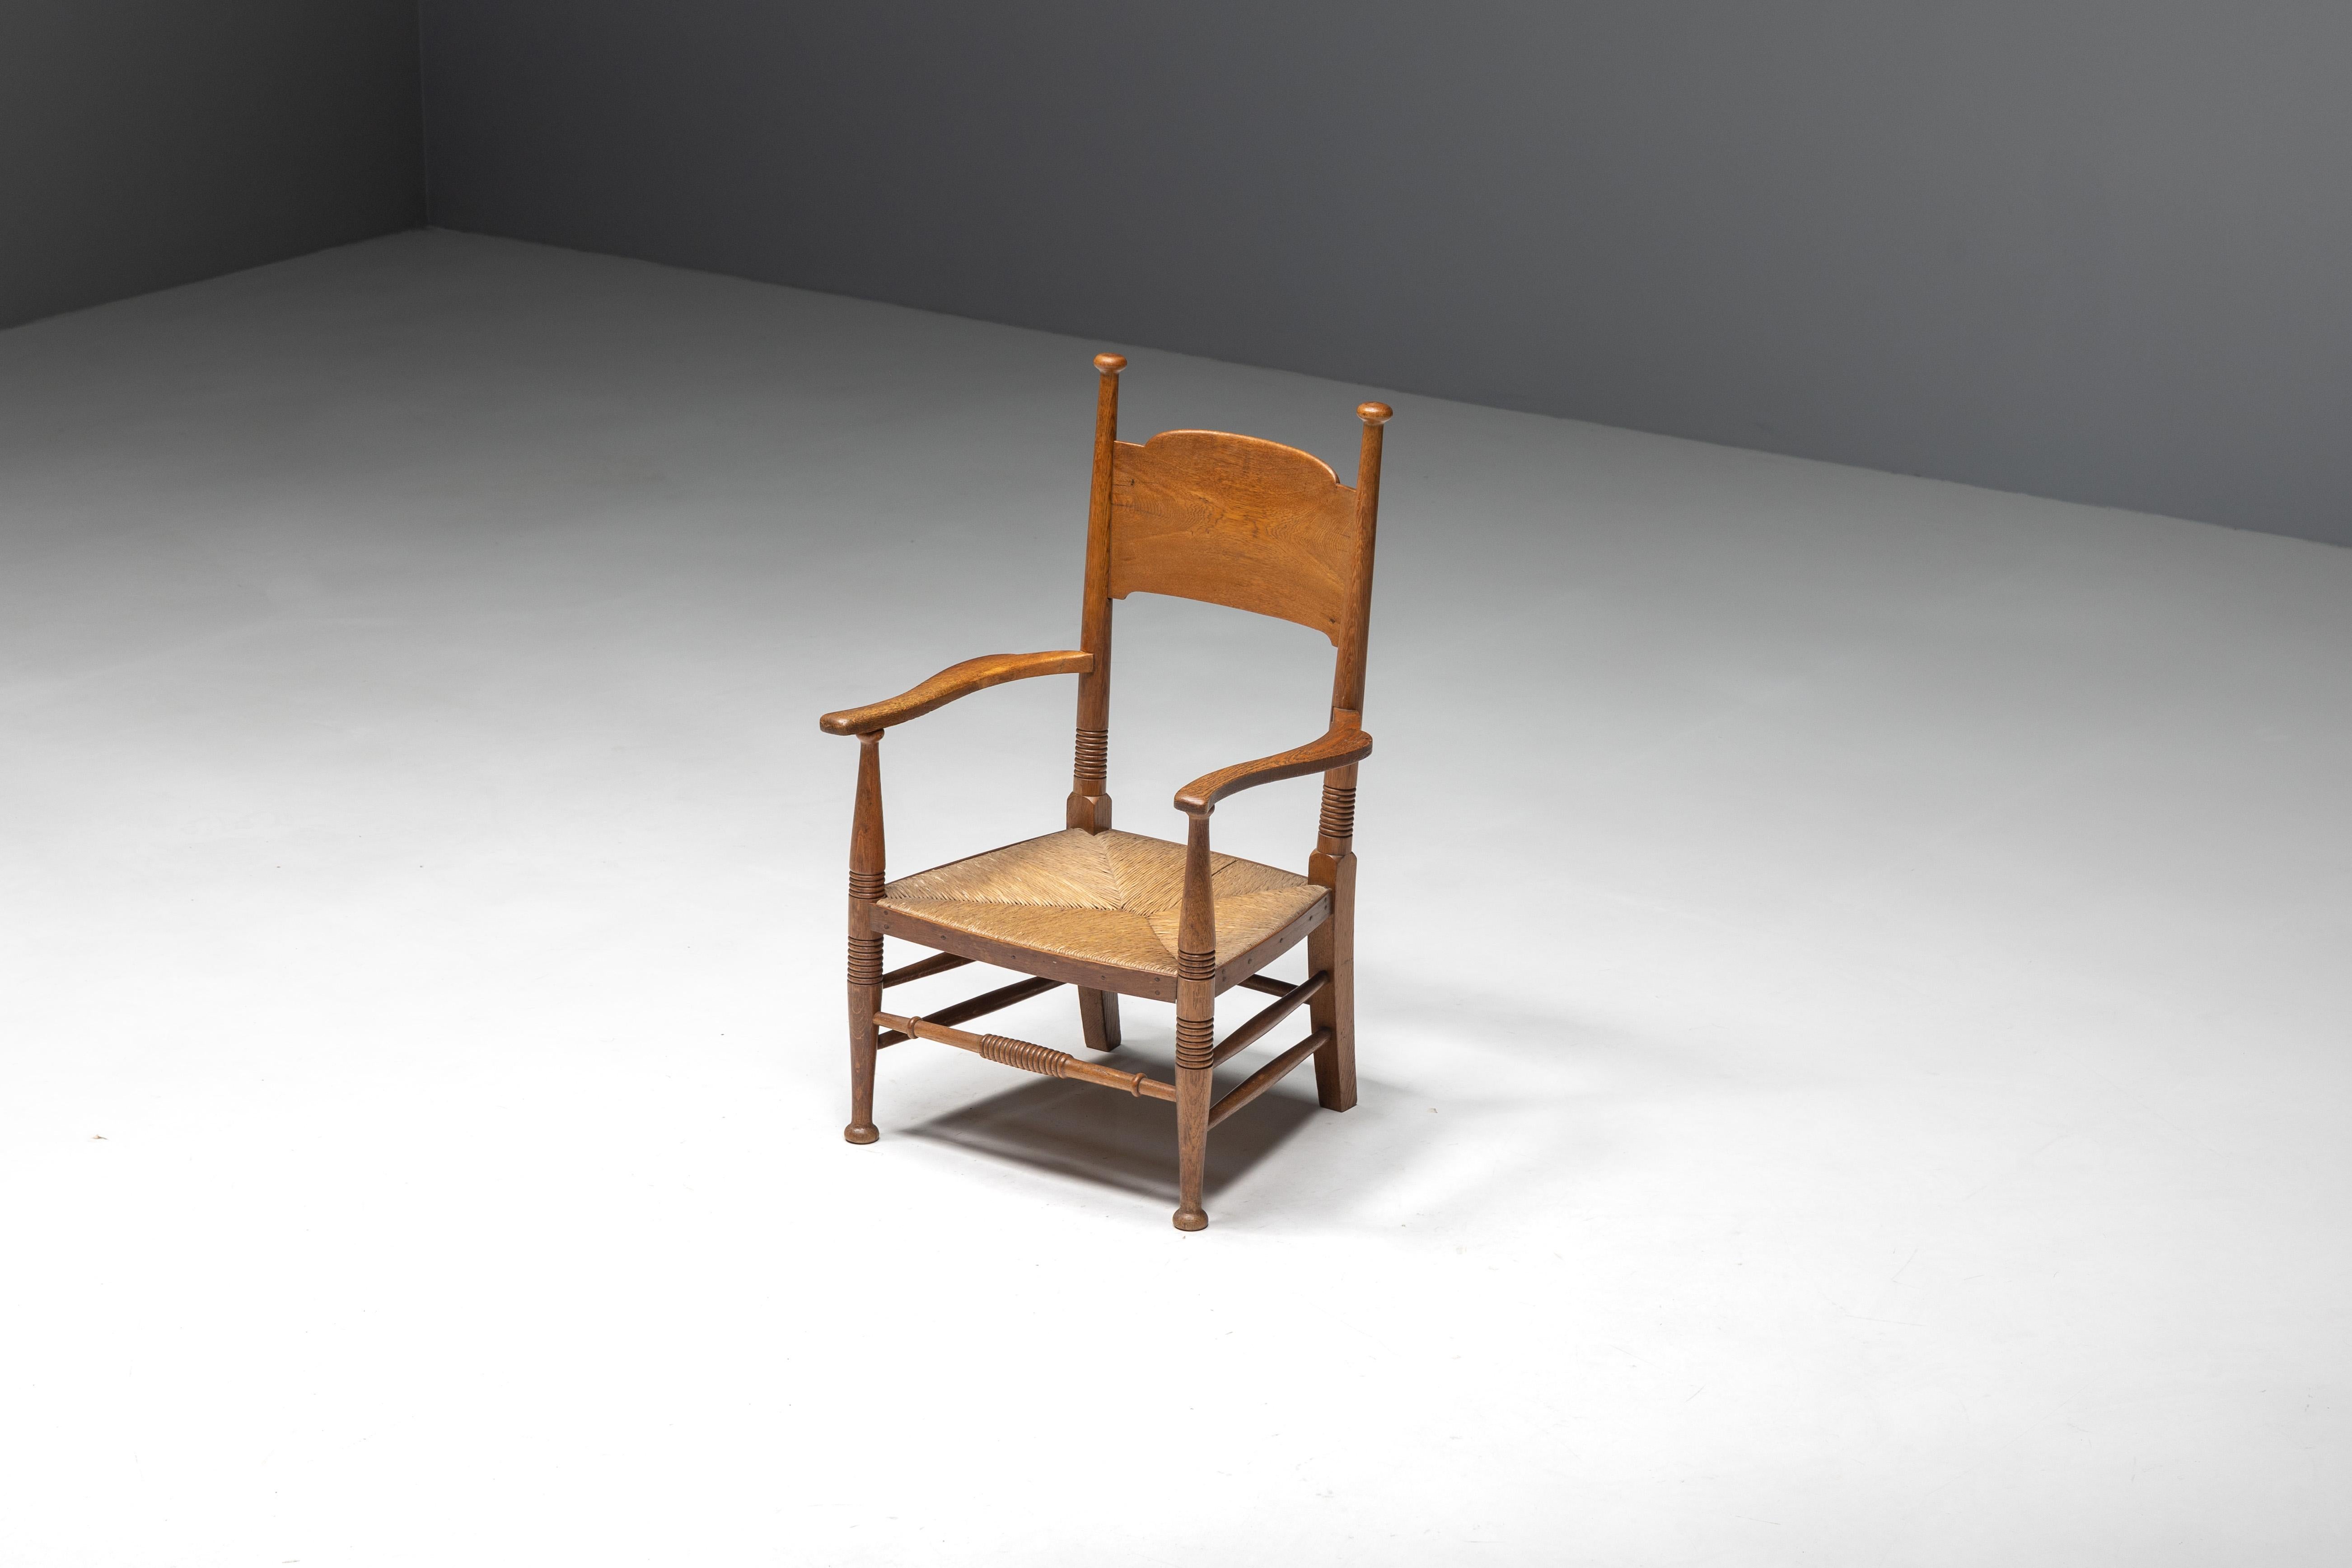 Rustikaler Sessel aus den frühen 1900er Jahren, der die außergewöhnliche Handwerkskunst britischer Kunsthandwerker im Geiste der Arts-and-Crafts-Bewegung zeigt. Der aus robustem Eichenholz gefertigte Sessel mit einer Sitzfläche aus natürlichem Stroh